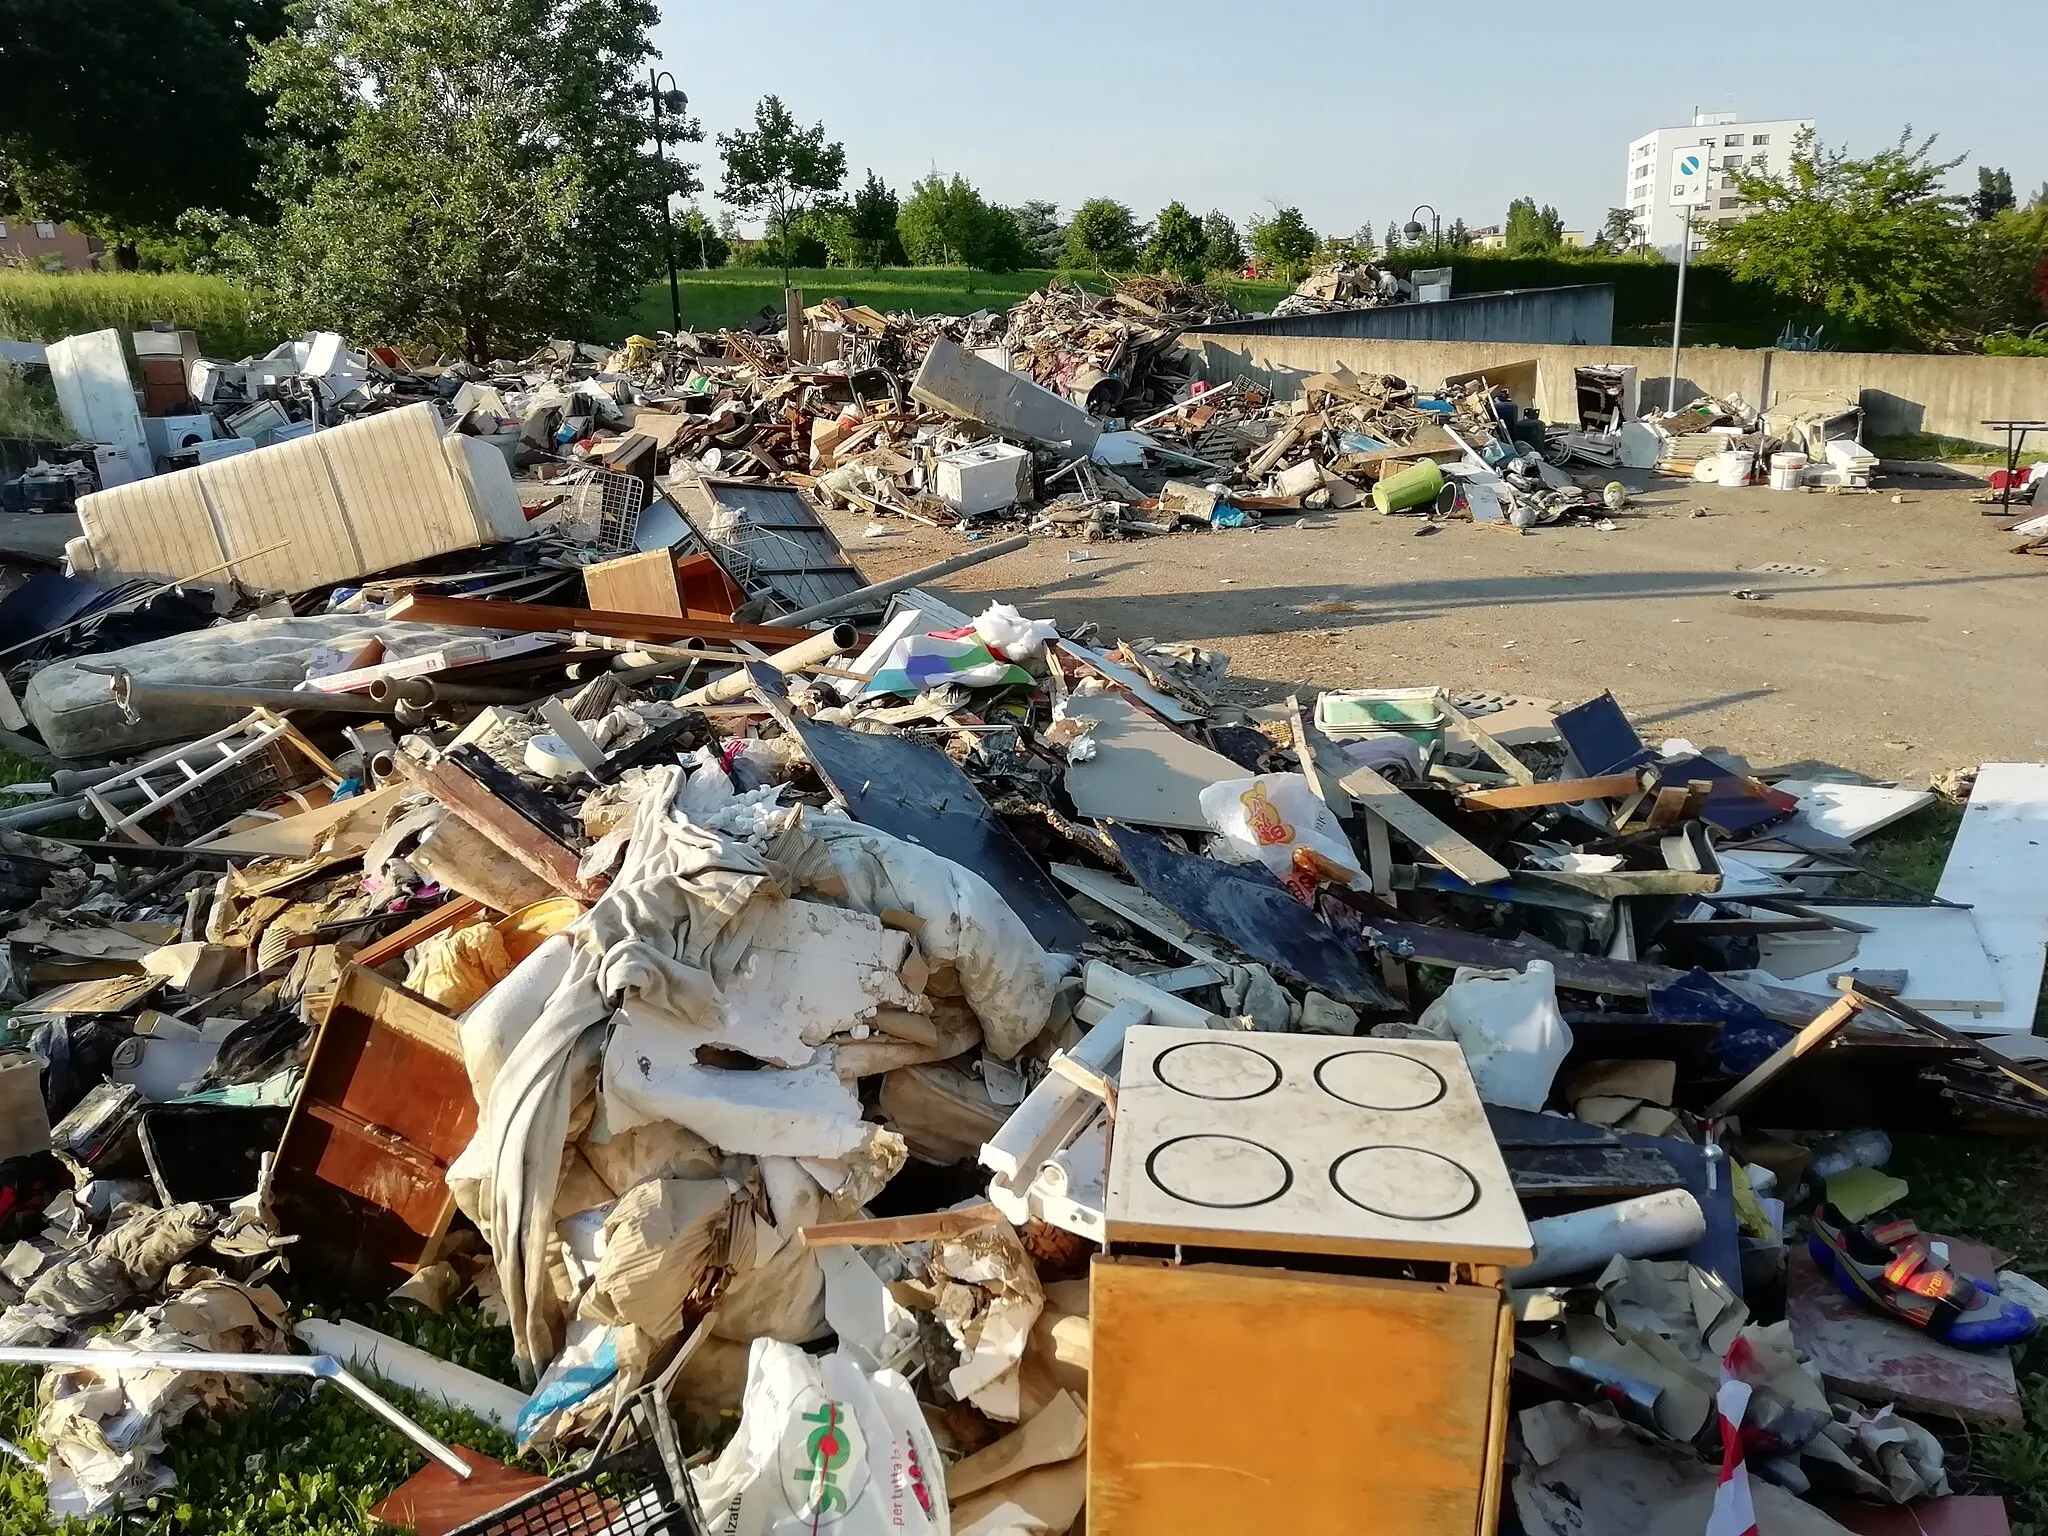 Photo showing: parcheggio trasformato in discarica temporanea dei rifiuti provenienti dalle case degli abitanti dopo l'alluvione, che permette di visualizzare i danni materiali in zona, frazione Pulce di San Lazzaro di Savena (BO)